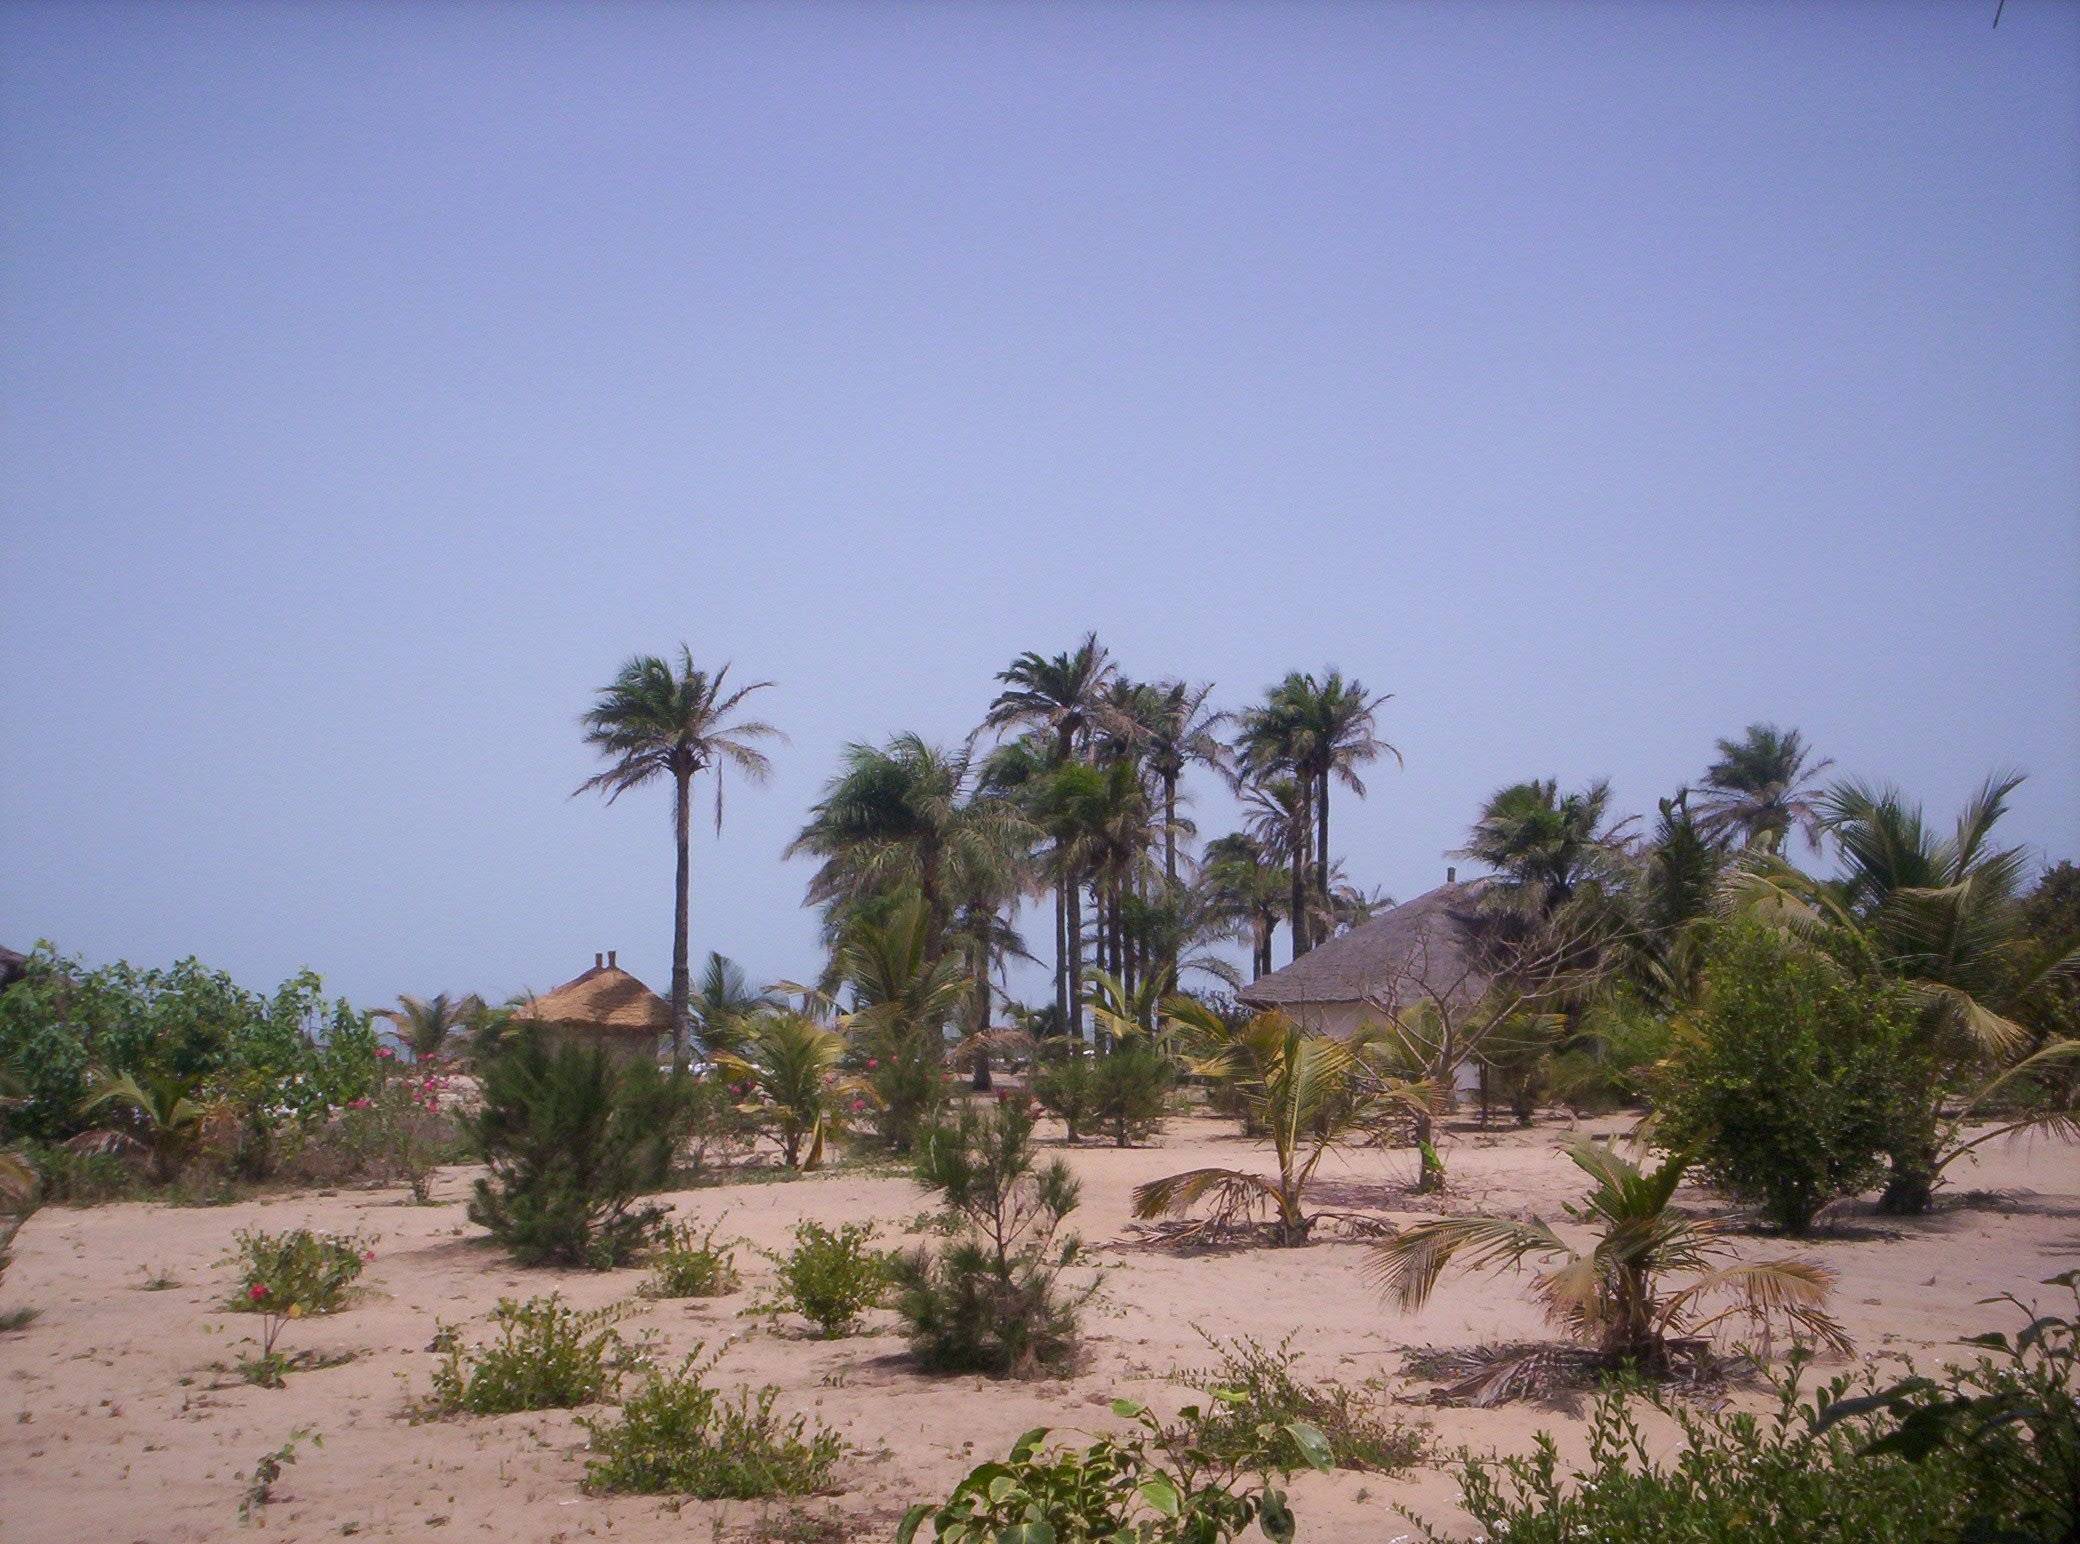 Inmersión cultural en el Sur: Etnias, Naturaleza y Playas de la Casamance